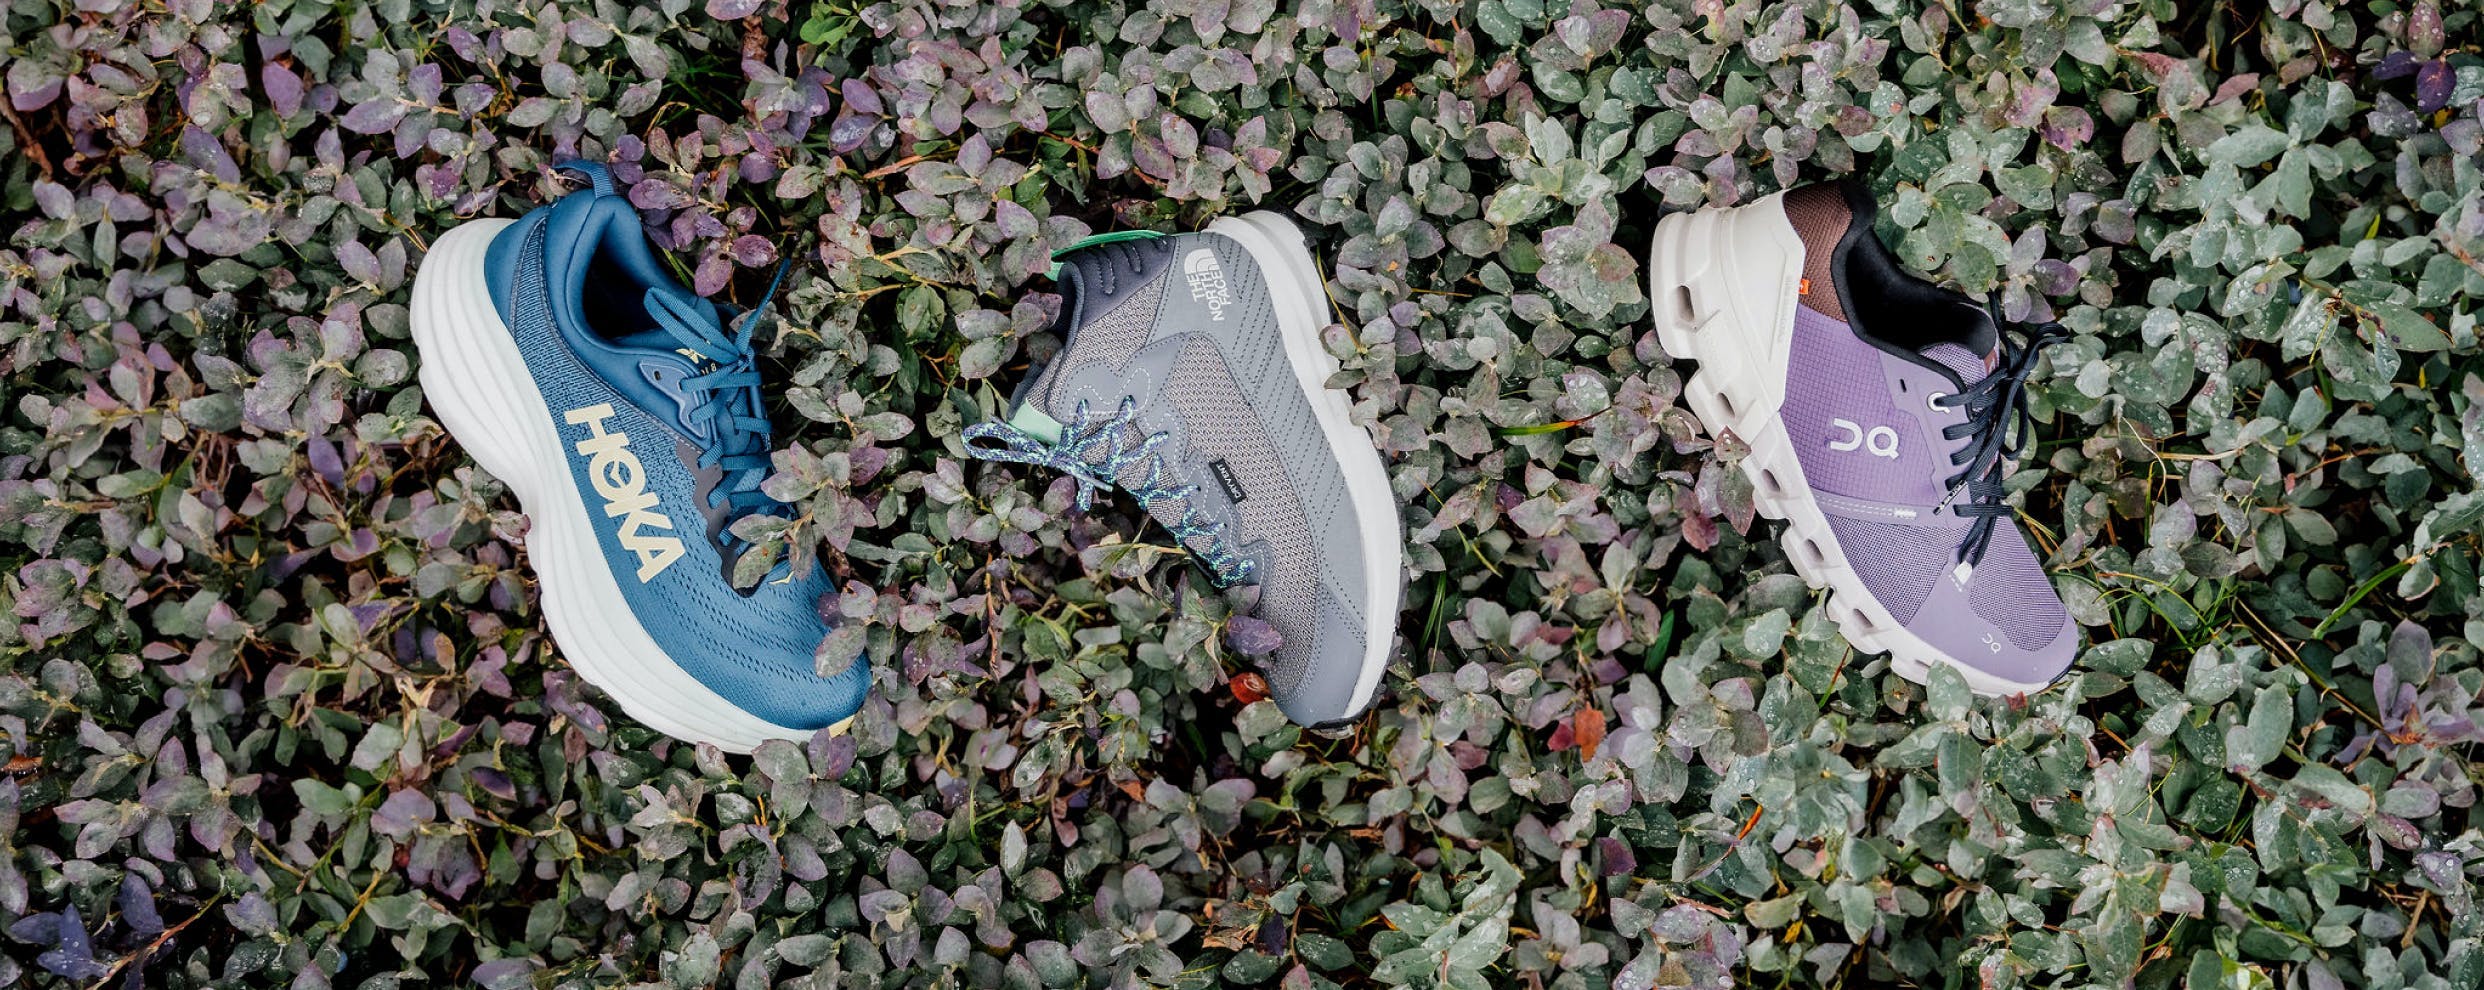 Nouveau souliers. Semelles adhérents, étoffes imperméables et matériaux recyclés pour explorer les sentiers colorés par l’automne.